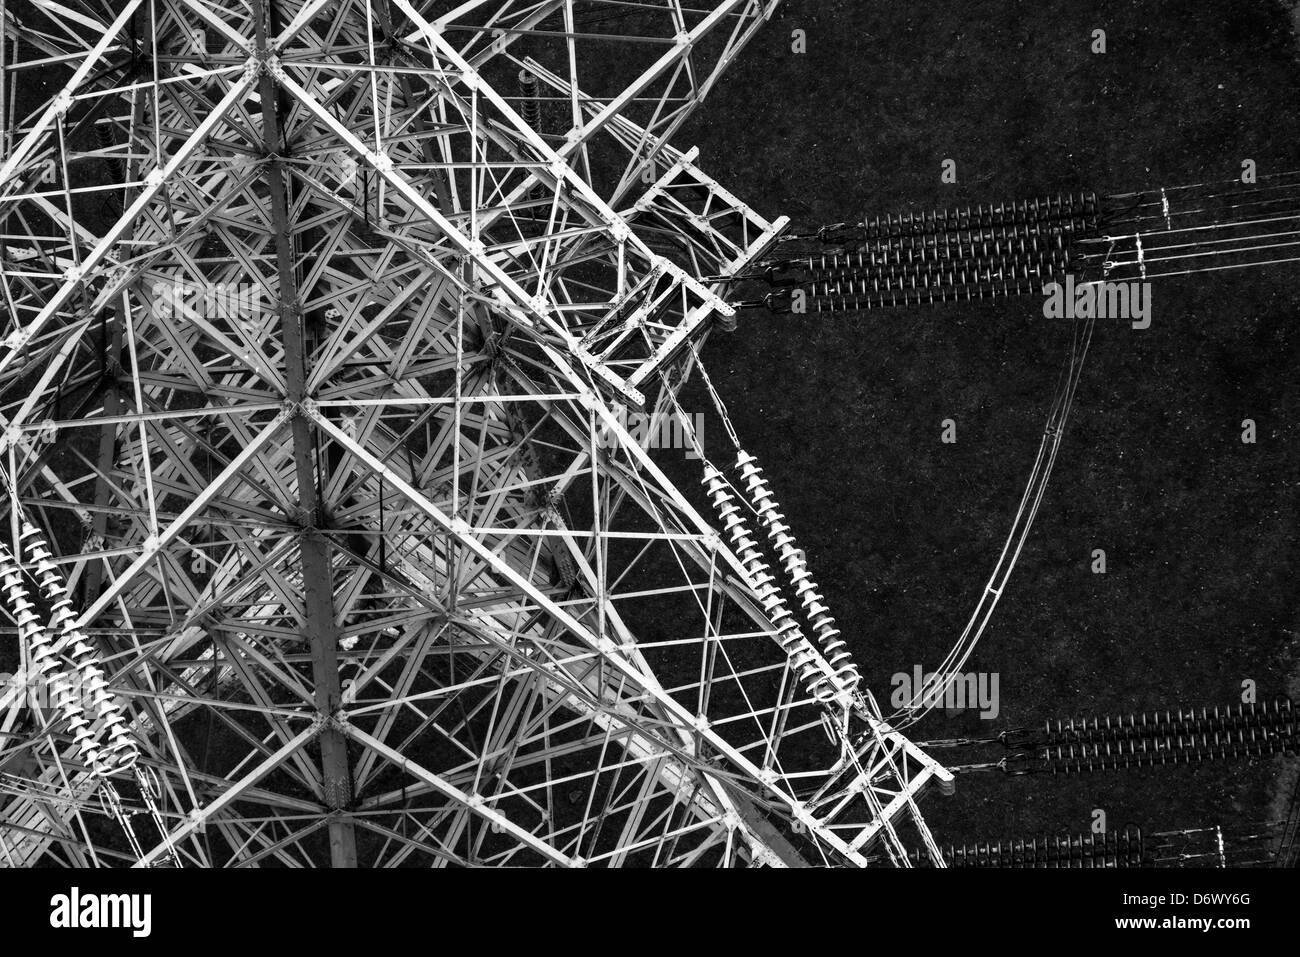 Close up noir et blanc photographie aérienne montrant les détails des lignes électriques et pylône Banque D'Images